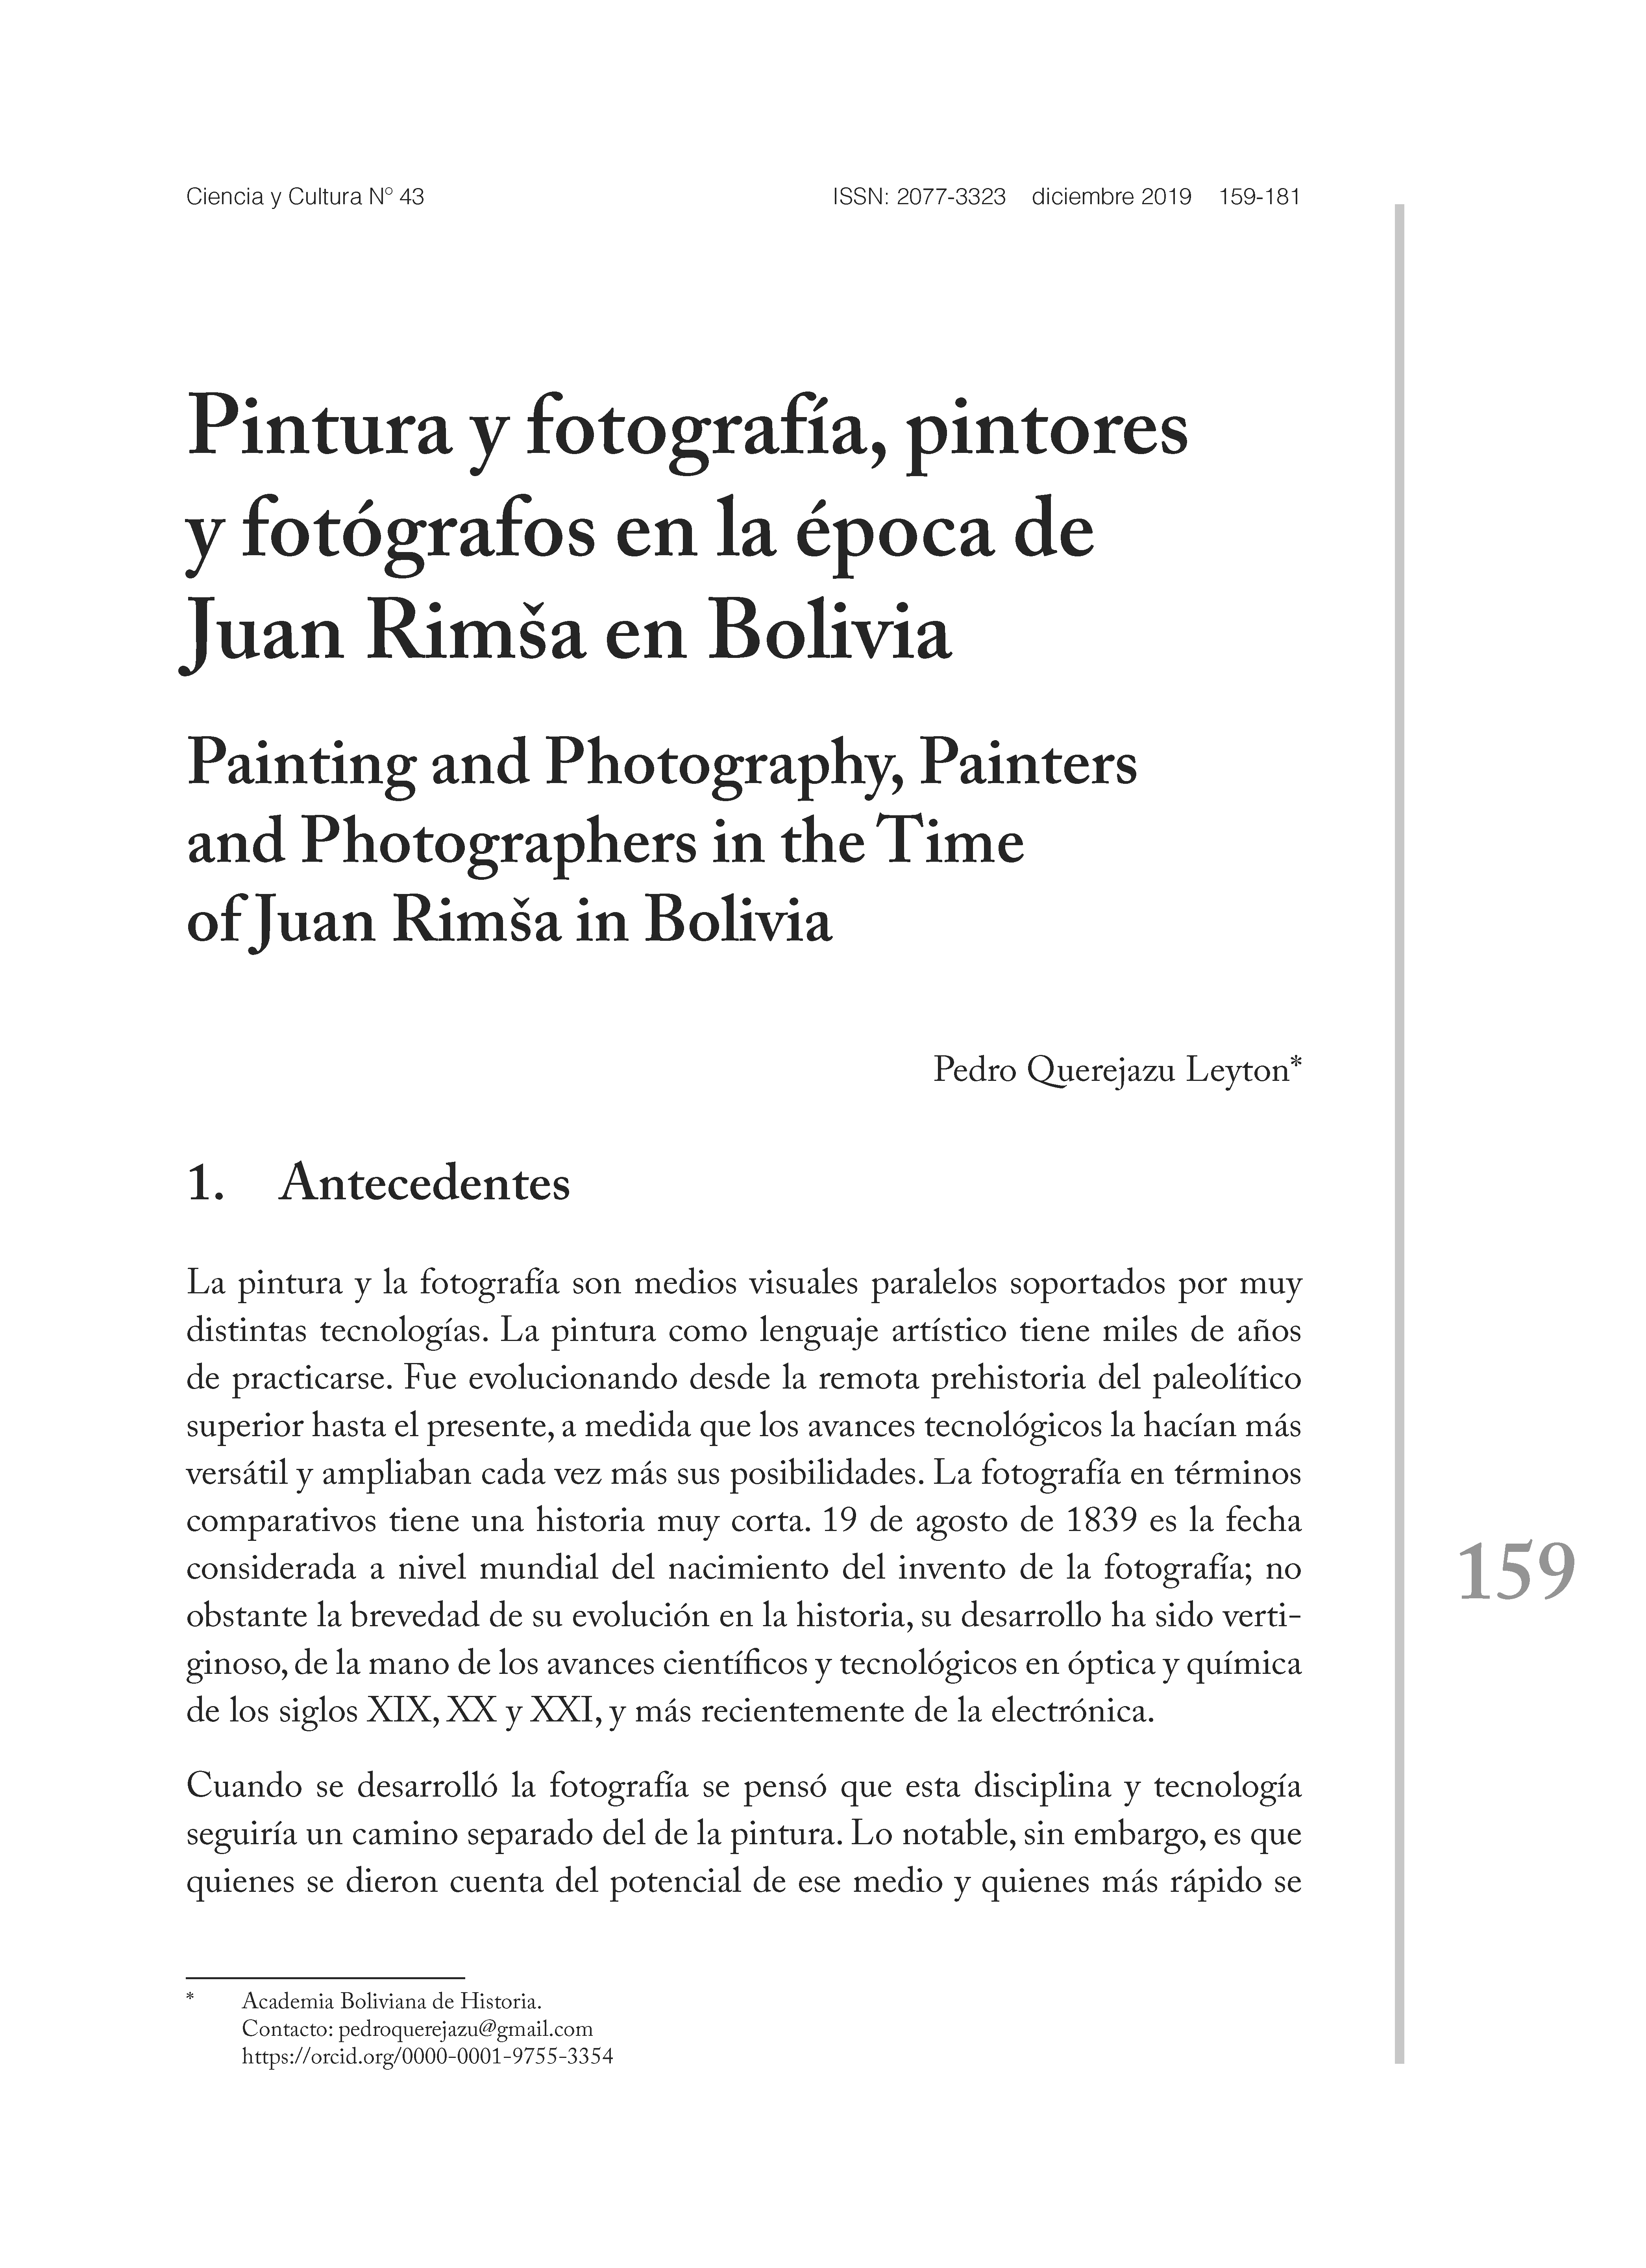 Pintura y fotografía, pintores y fotógrafos en la época de Juan Rimša en Bolivia